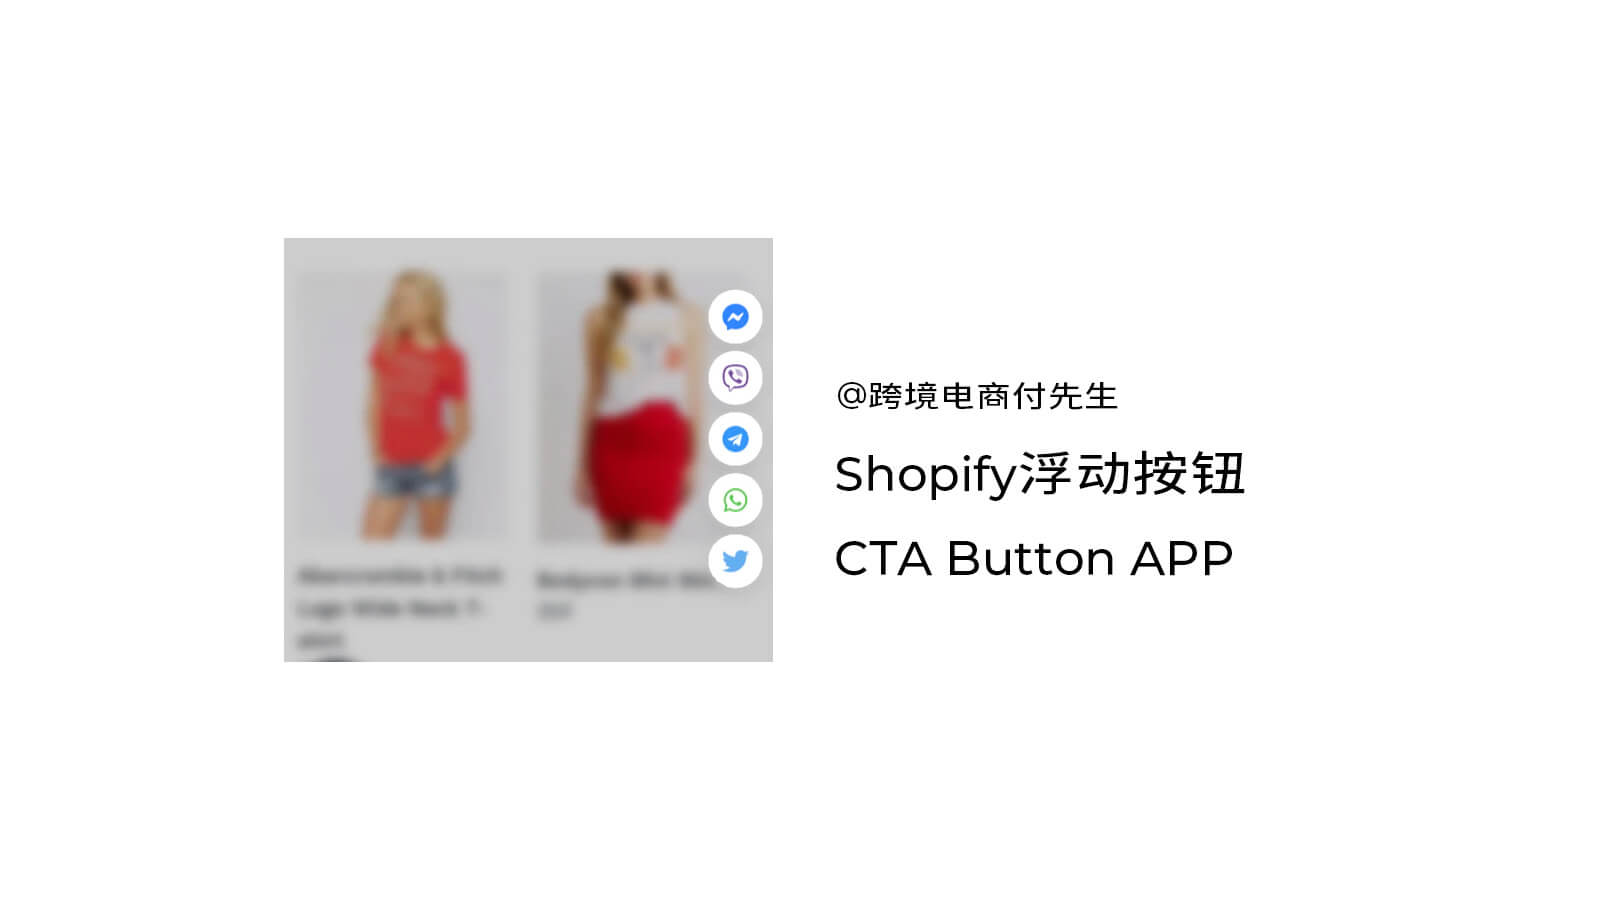 Shopify浮动按钮CTA Button APP